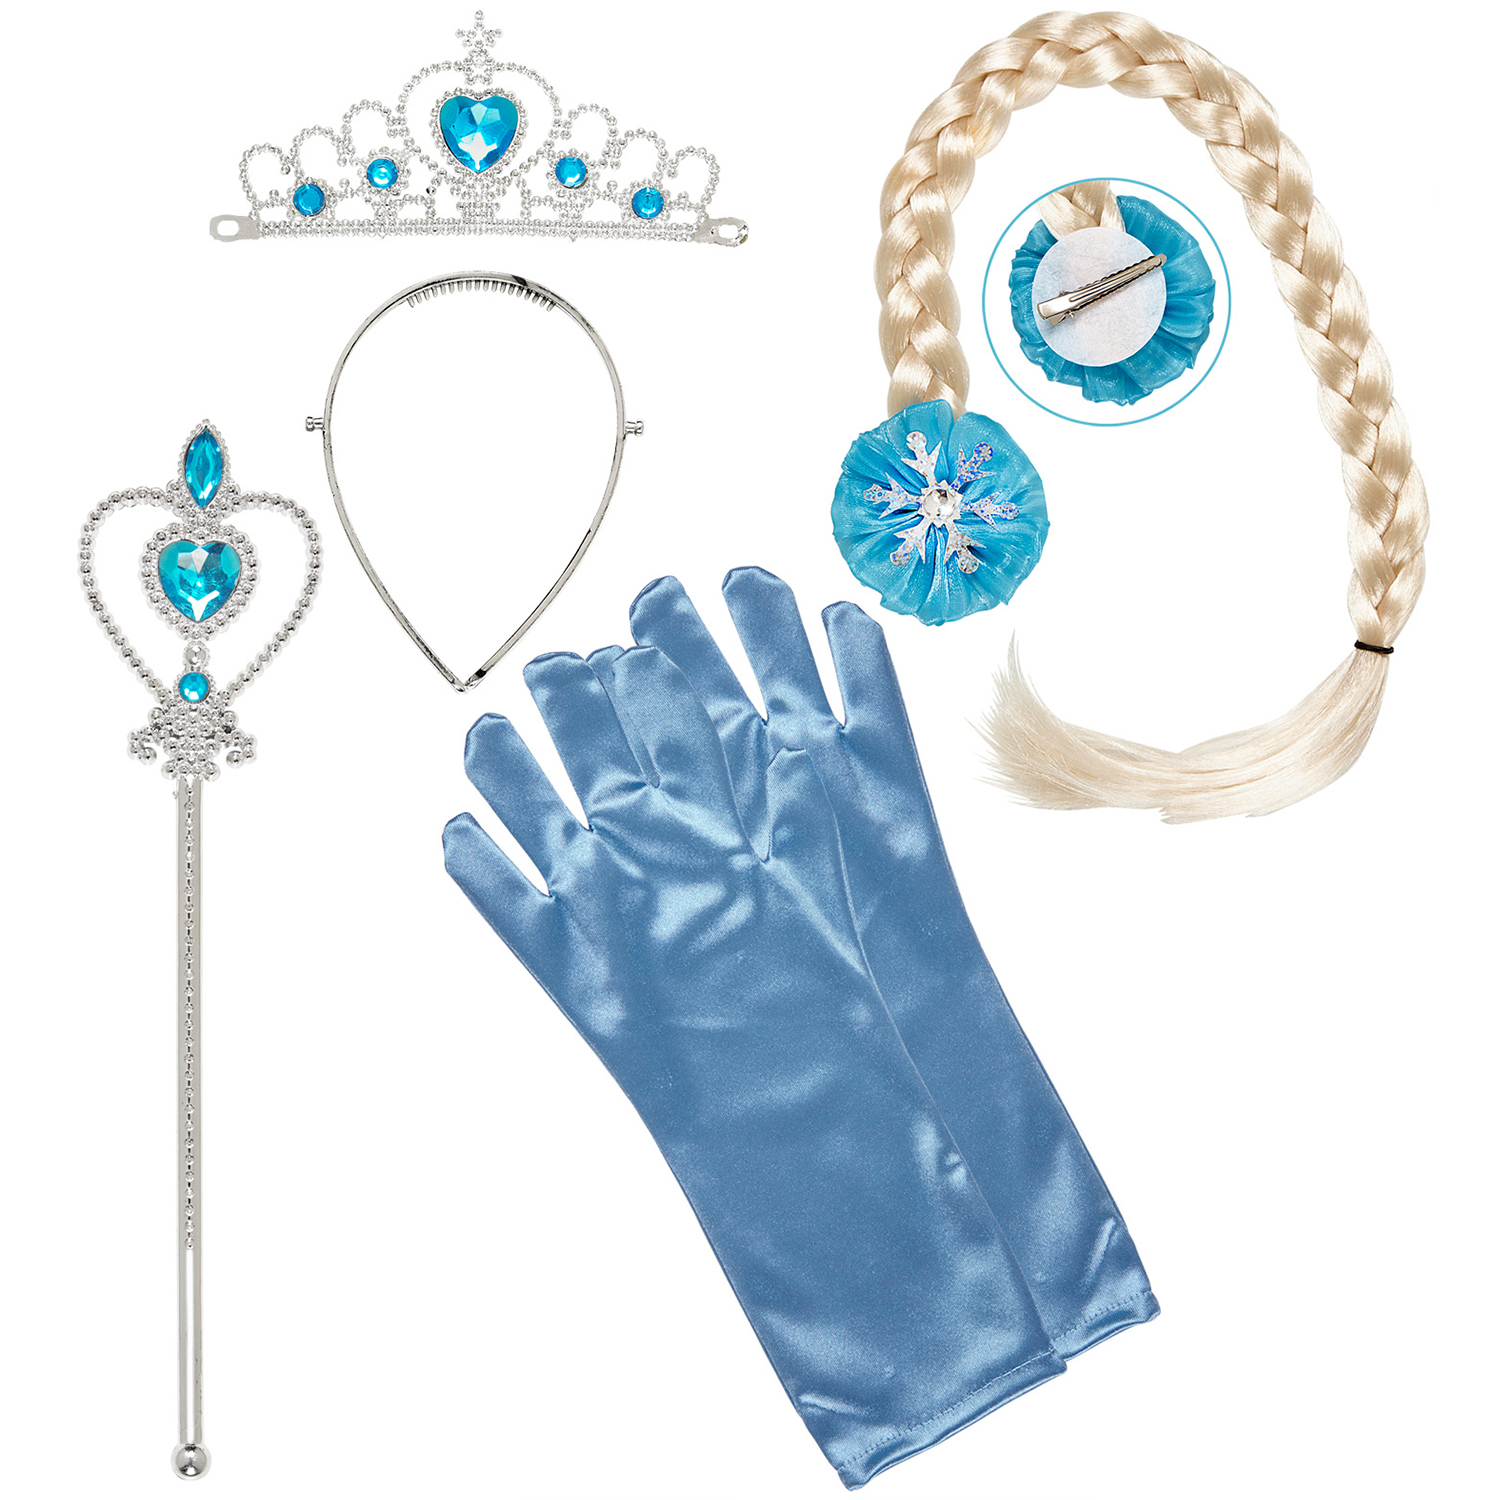 NEU Kinder-Set Eis-Prinzessin, Blau mit Krönchen / Tiara, Zopf, Handschuhen und Prinzessinnenstab